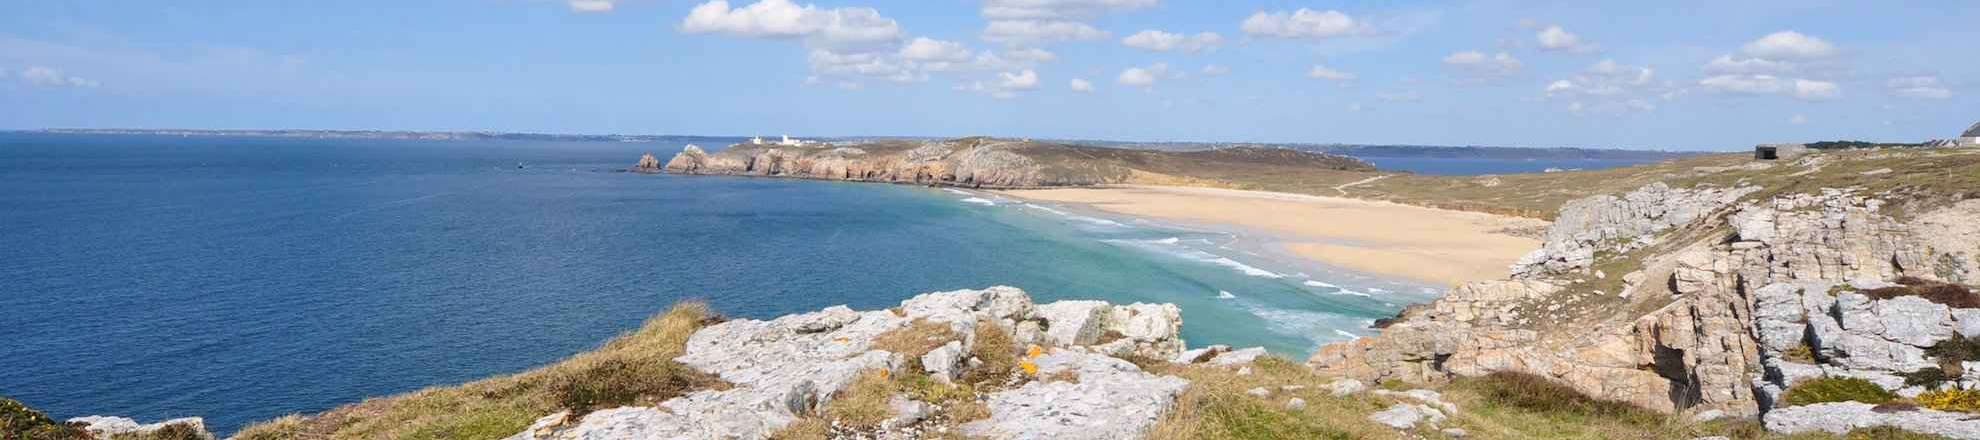 Urlaub-Bretagne im Finistère, der Sandstrand Pen Hat von Camaret-sur-mer ist einer der schönsten Strände der Bretagne